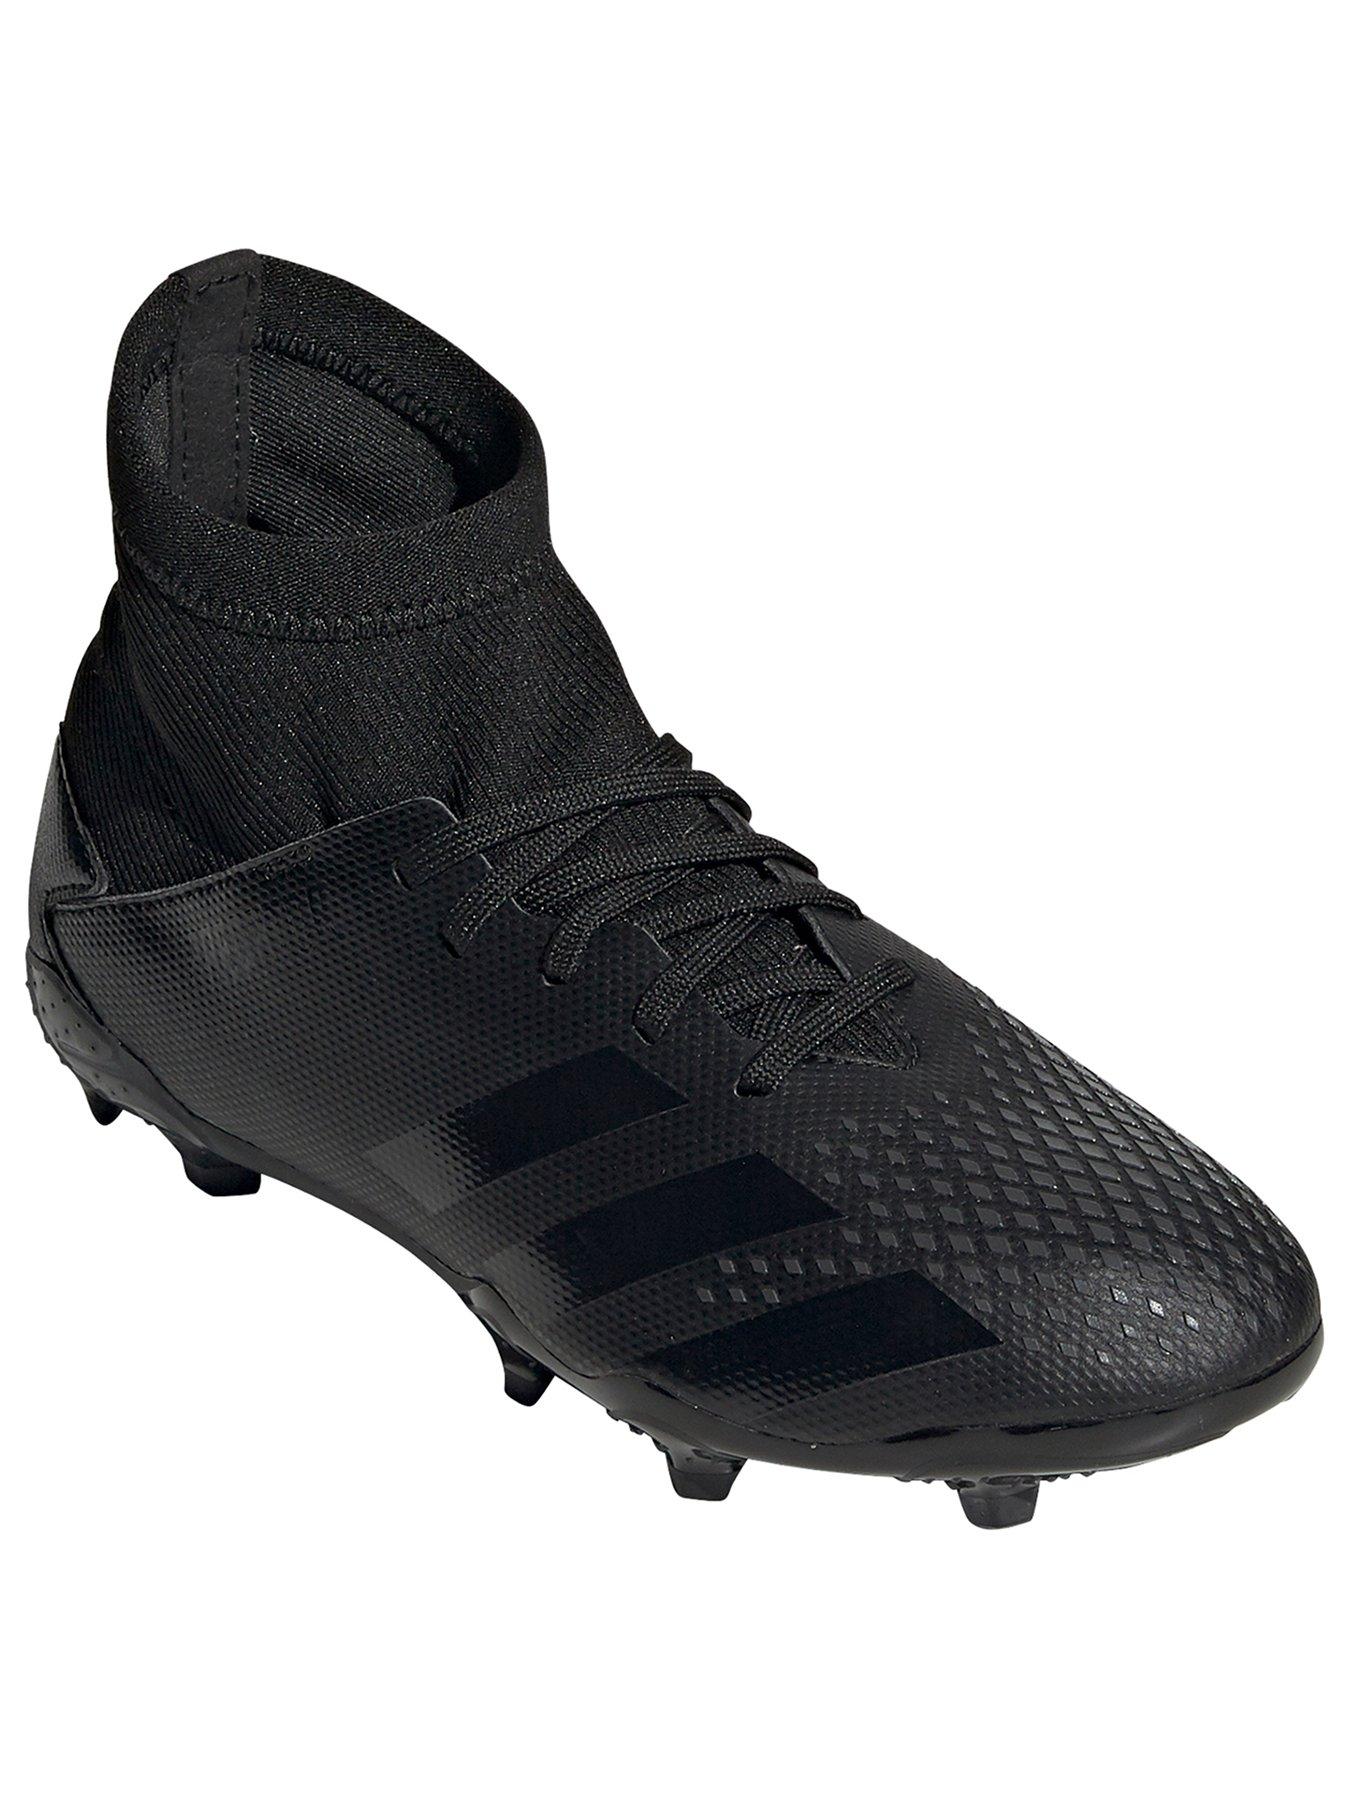 boys football boots size 1